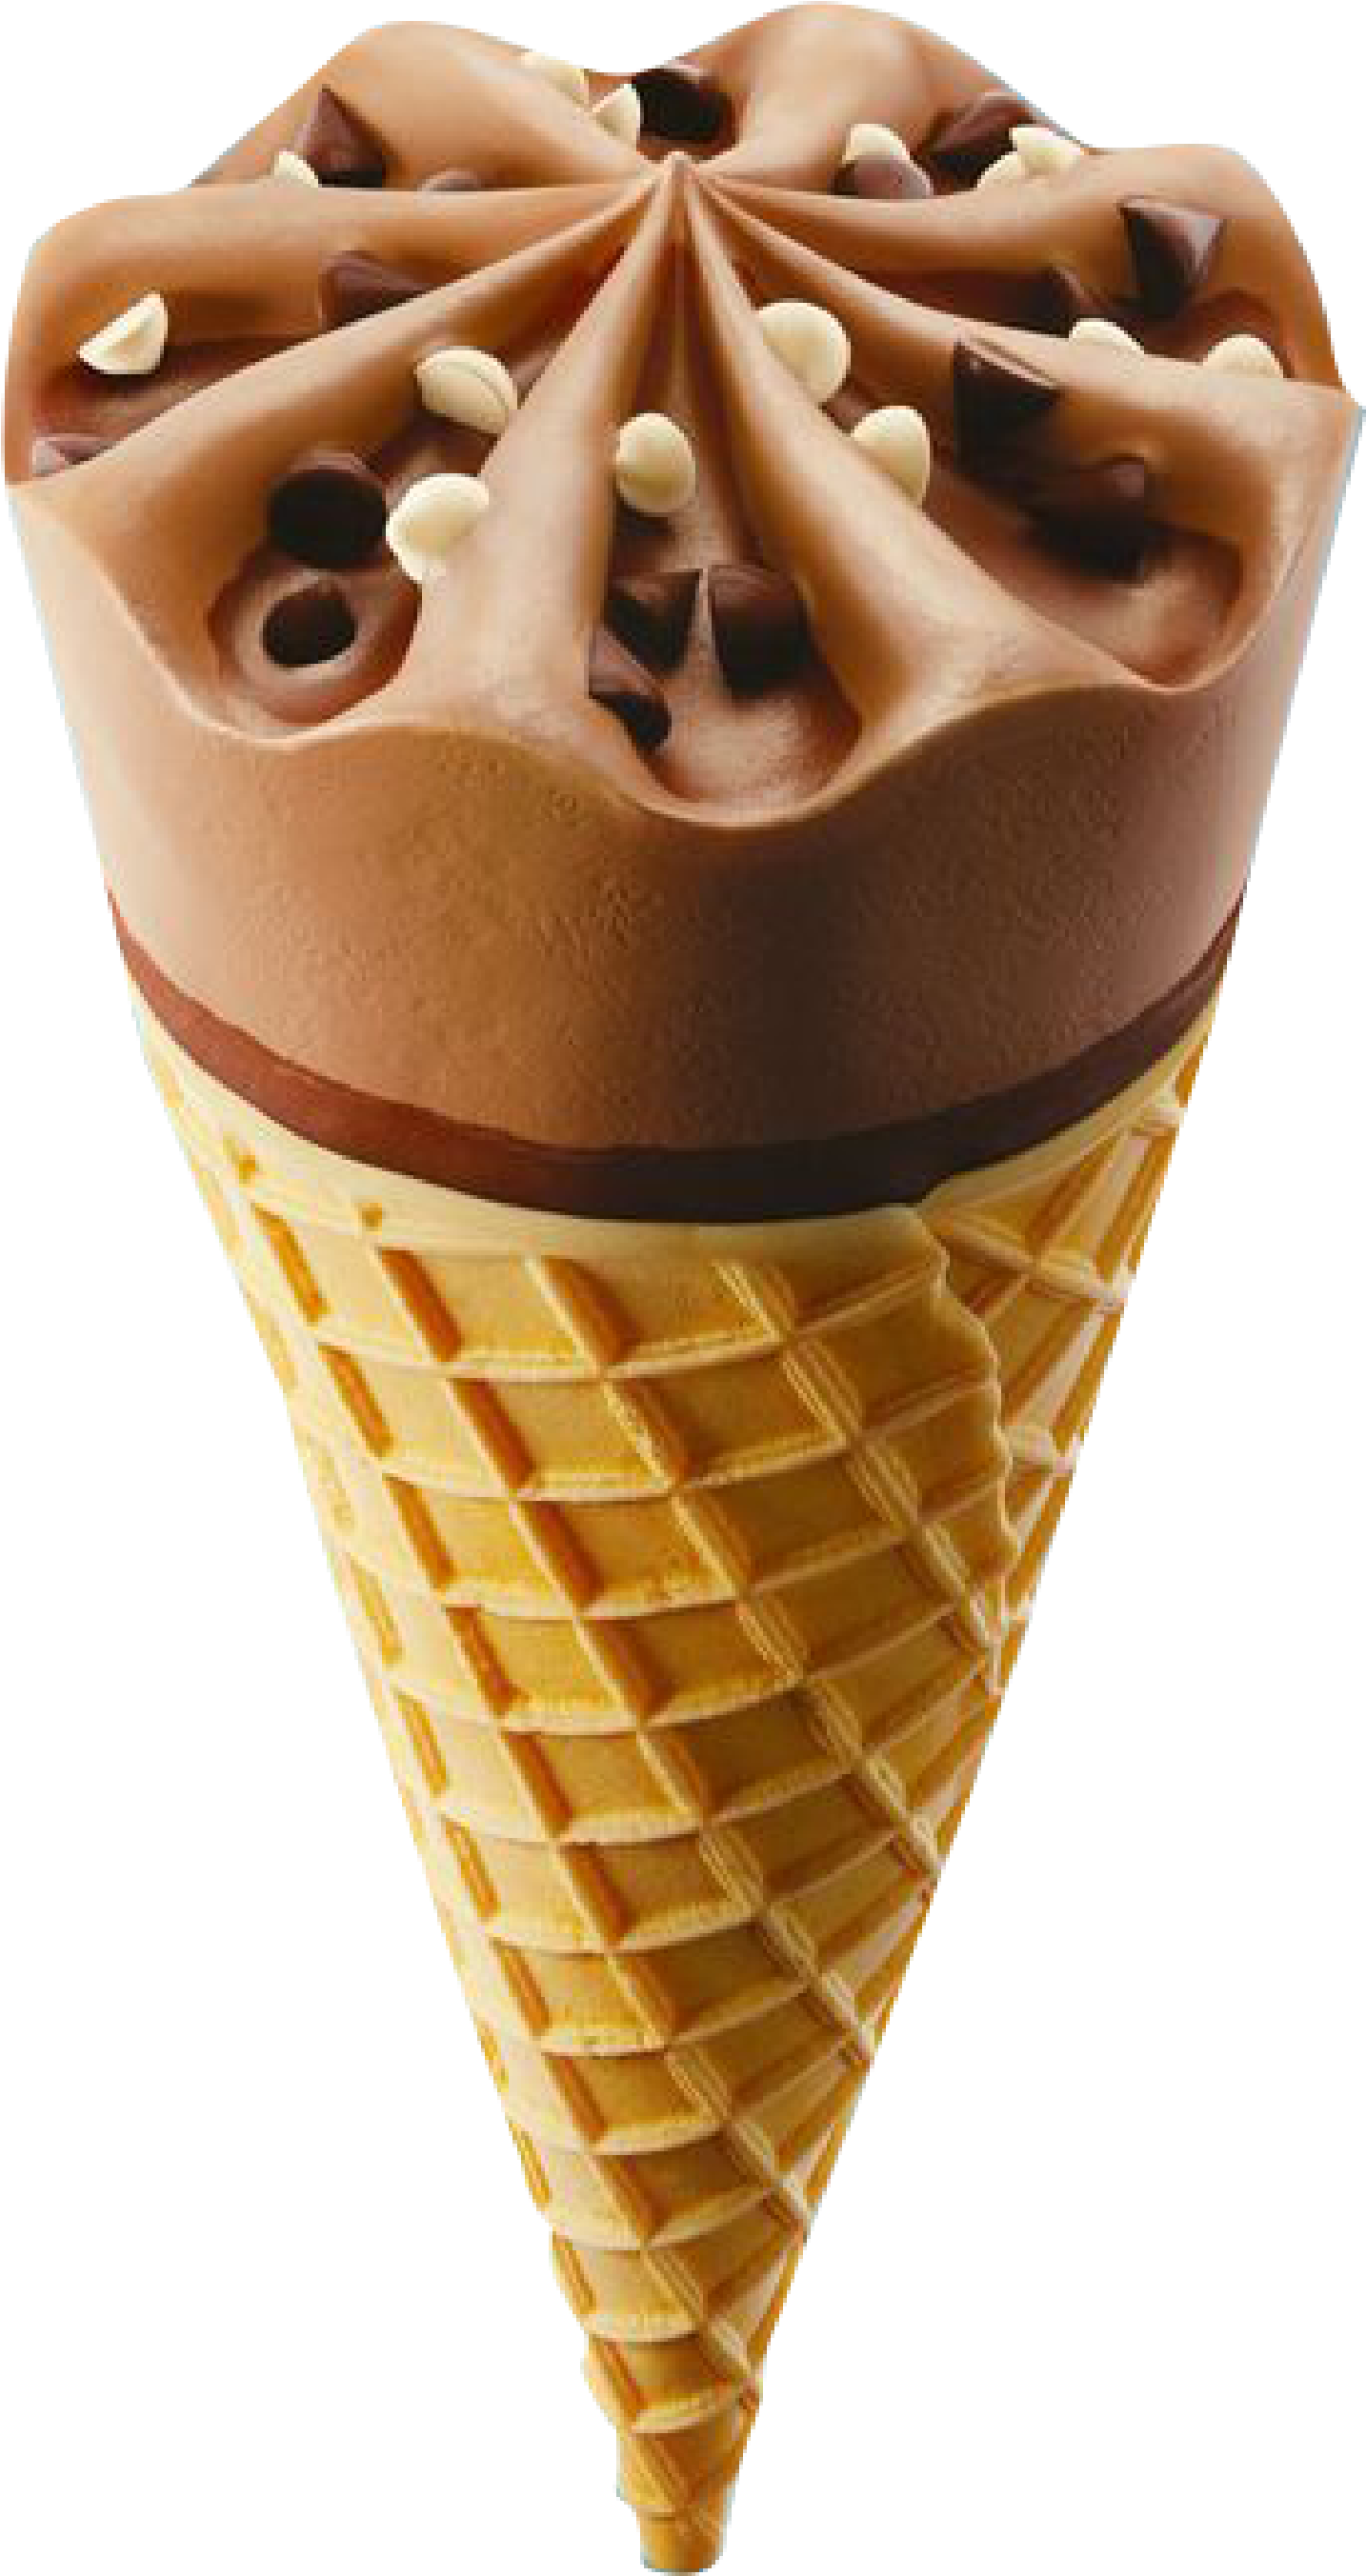 Chocolate Ice Cream Ice Cream Cone Sundae - Design (2480x3508)